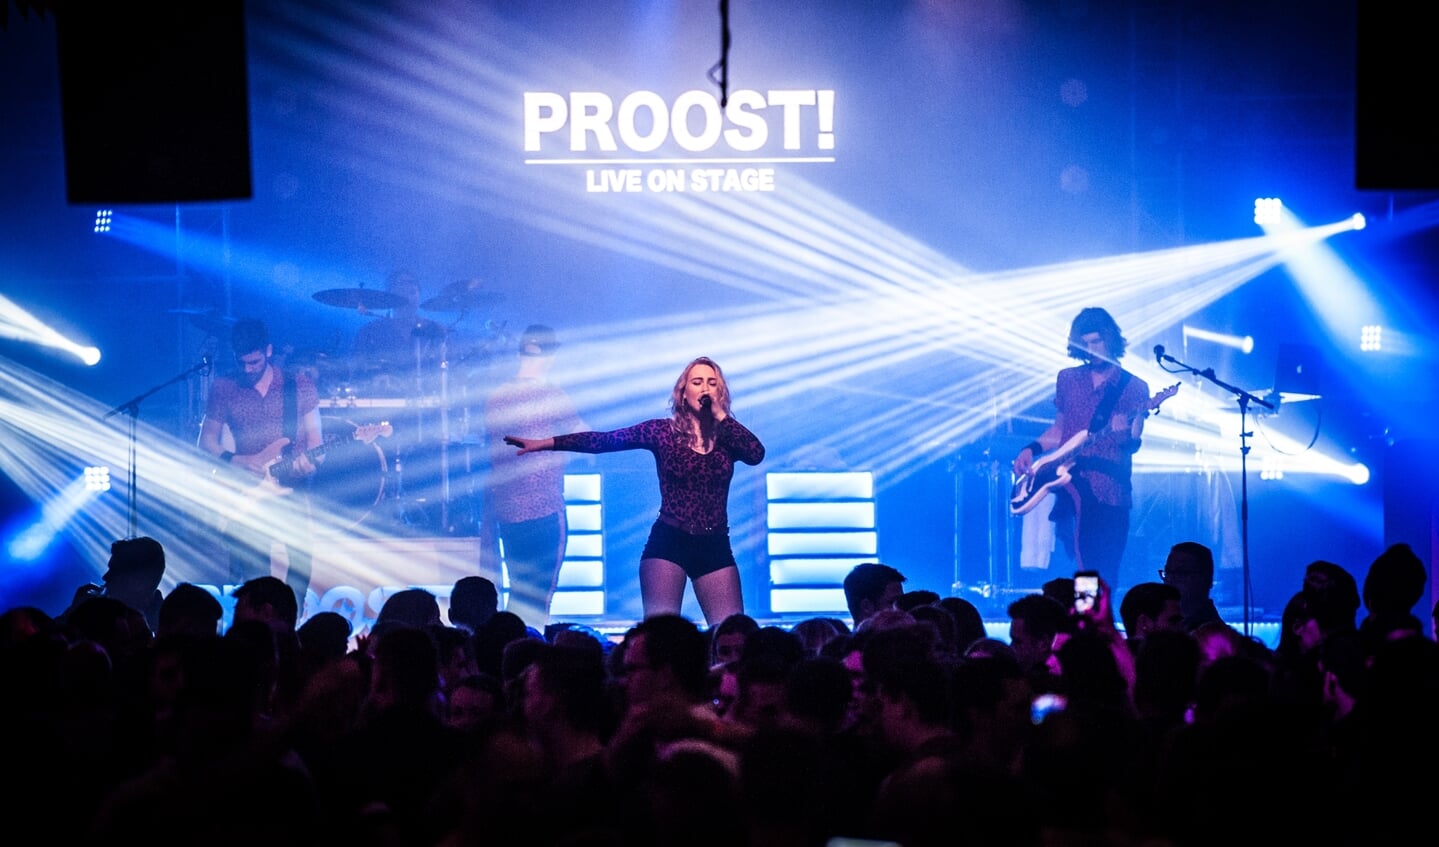 Met stageflames en confettishooters maakte Proost er op Koningsavond een feestje van.